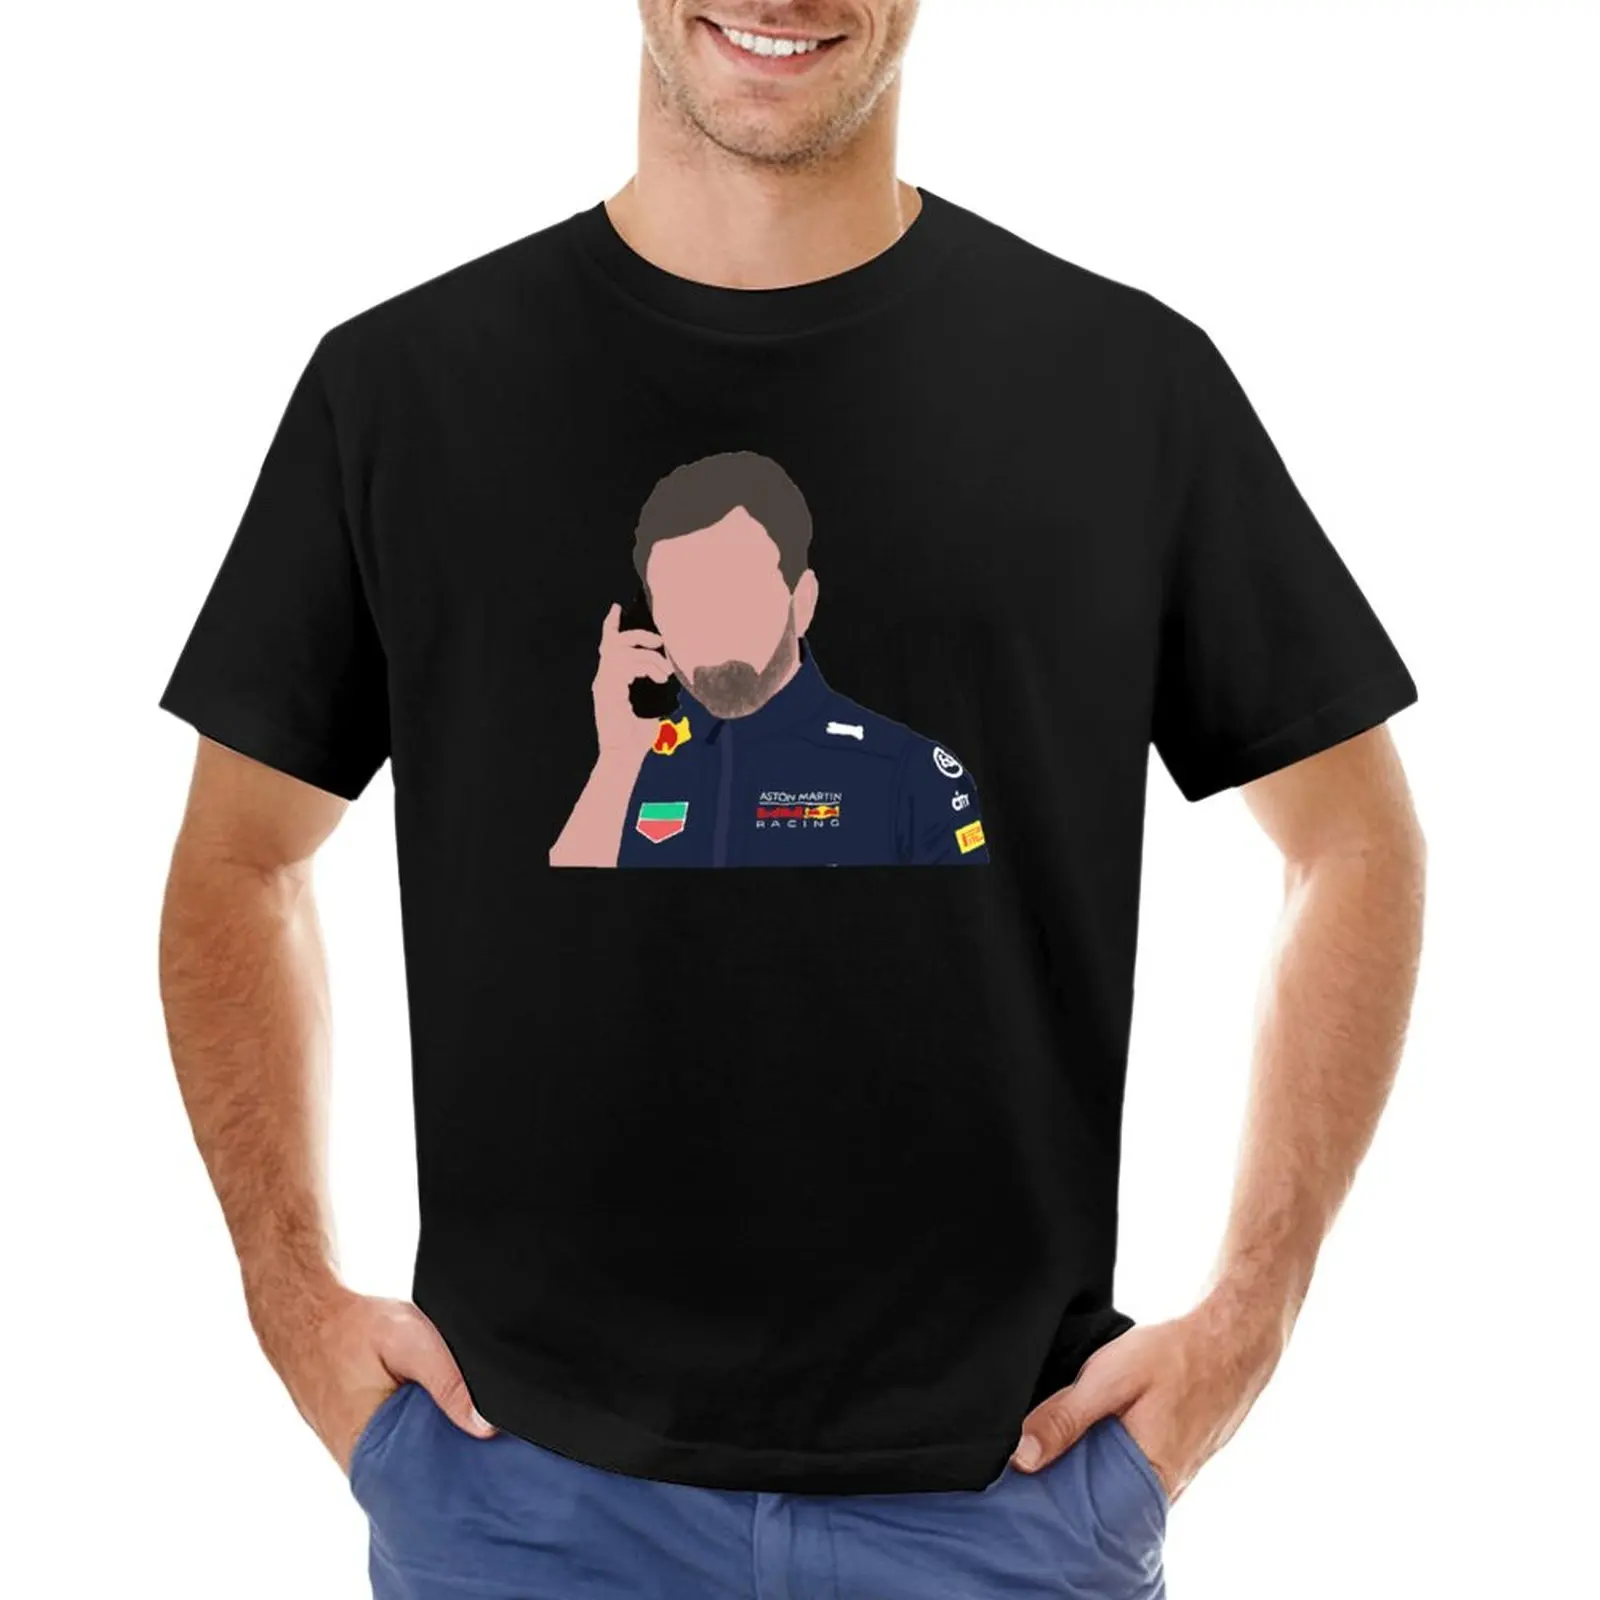 Футболка Christian Horner, милая одежда, черные футболки, короткая футболка, облегающие футболки для мужчин